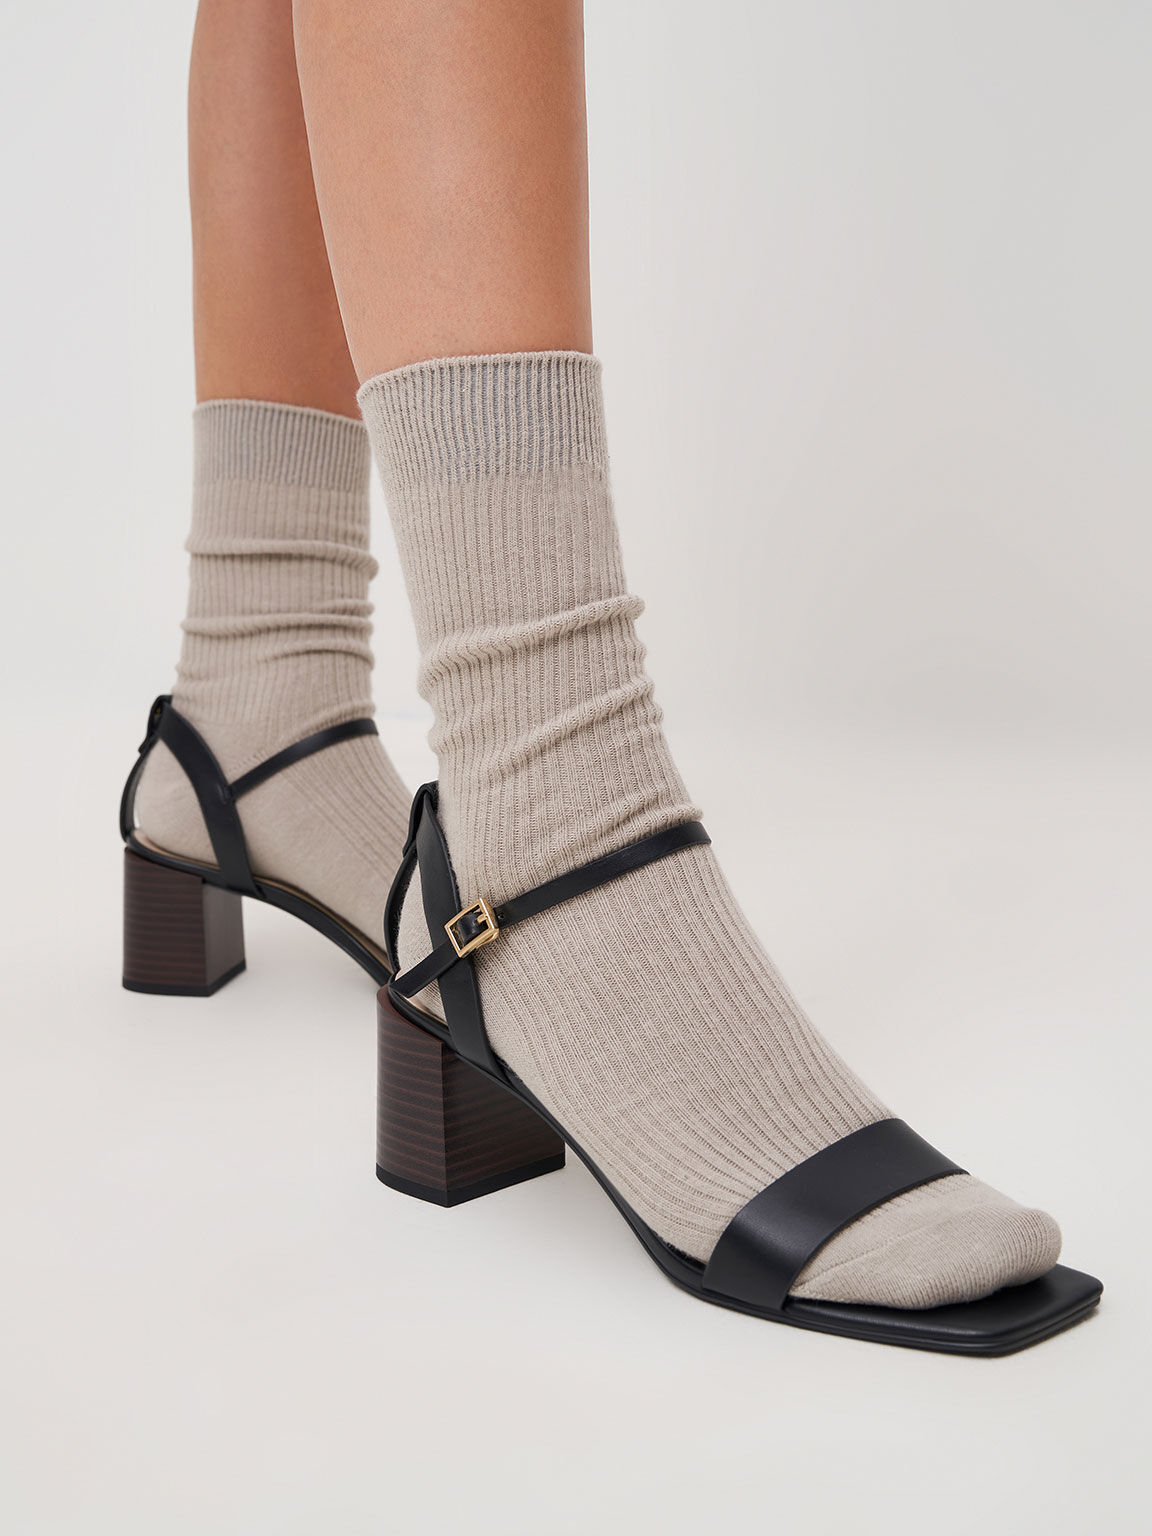 Sandal Ankle Strap Stacked Heel, Black, hi-res